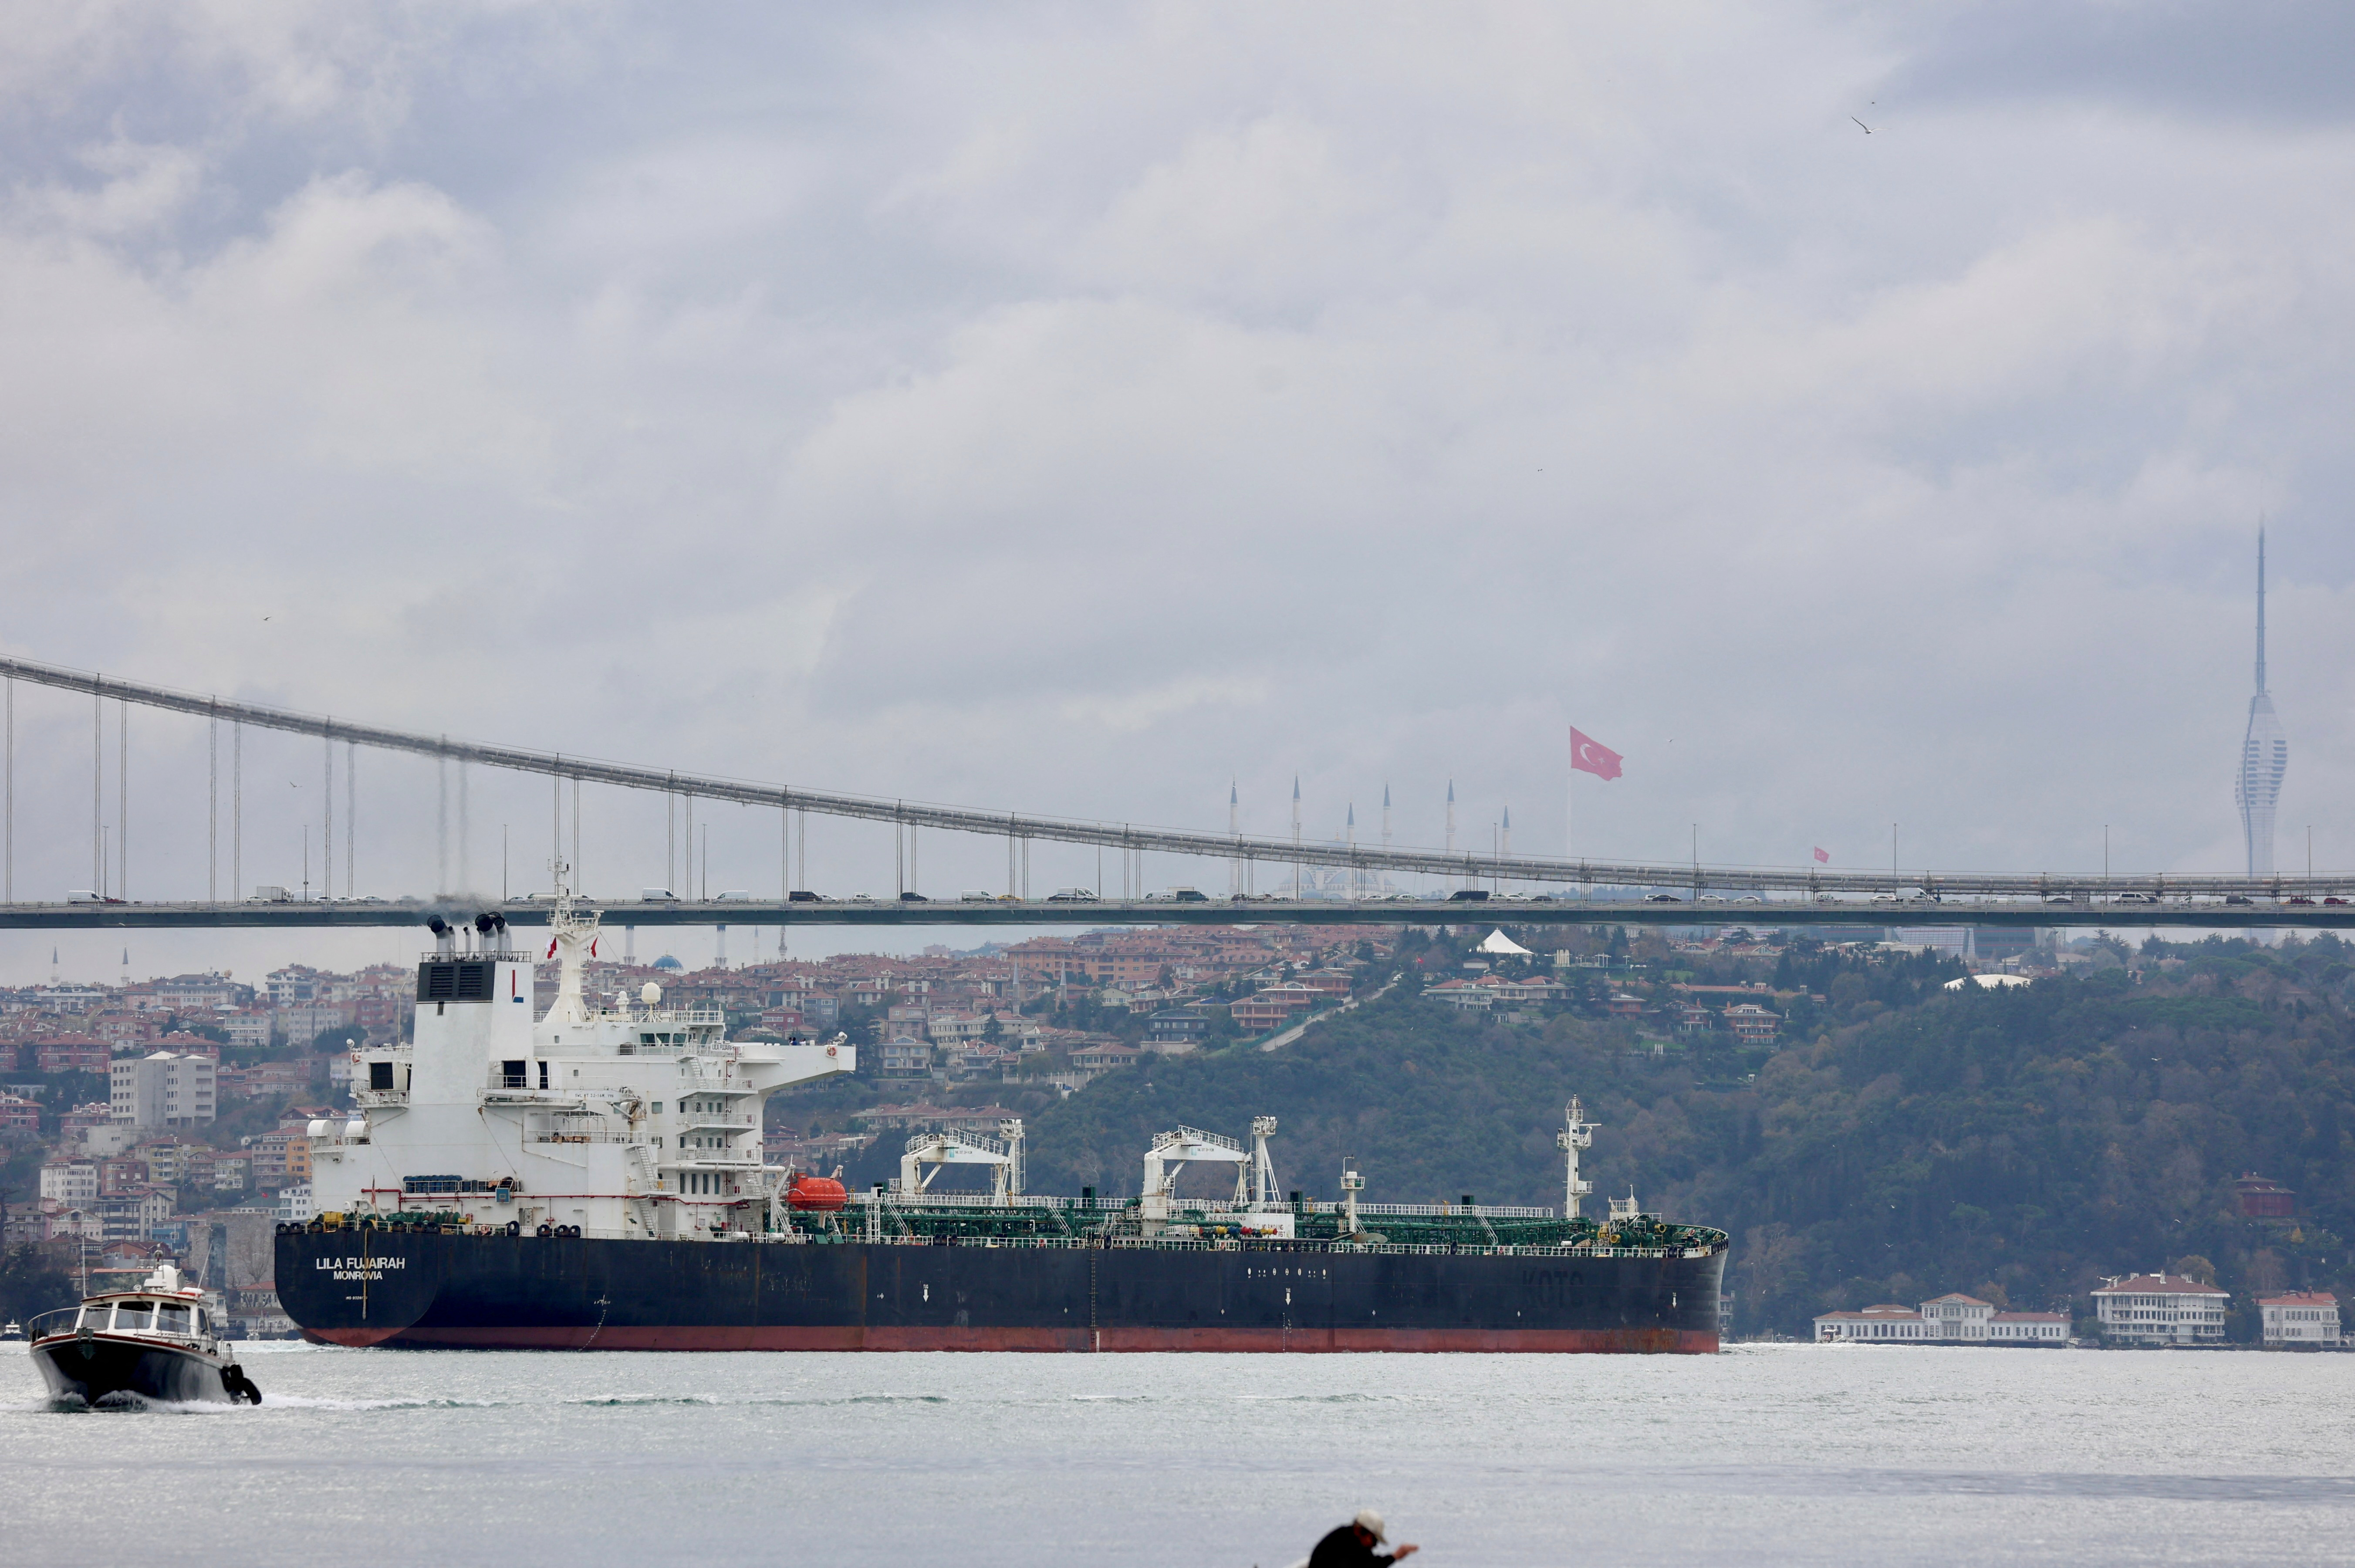 Oil product tanker Lila Fujairah sails in Istanbul's Bosphorus